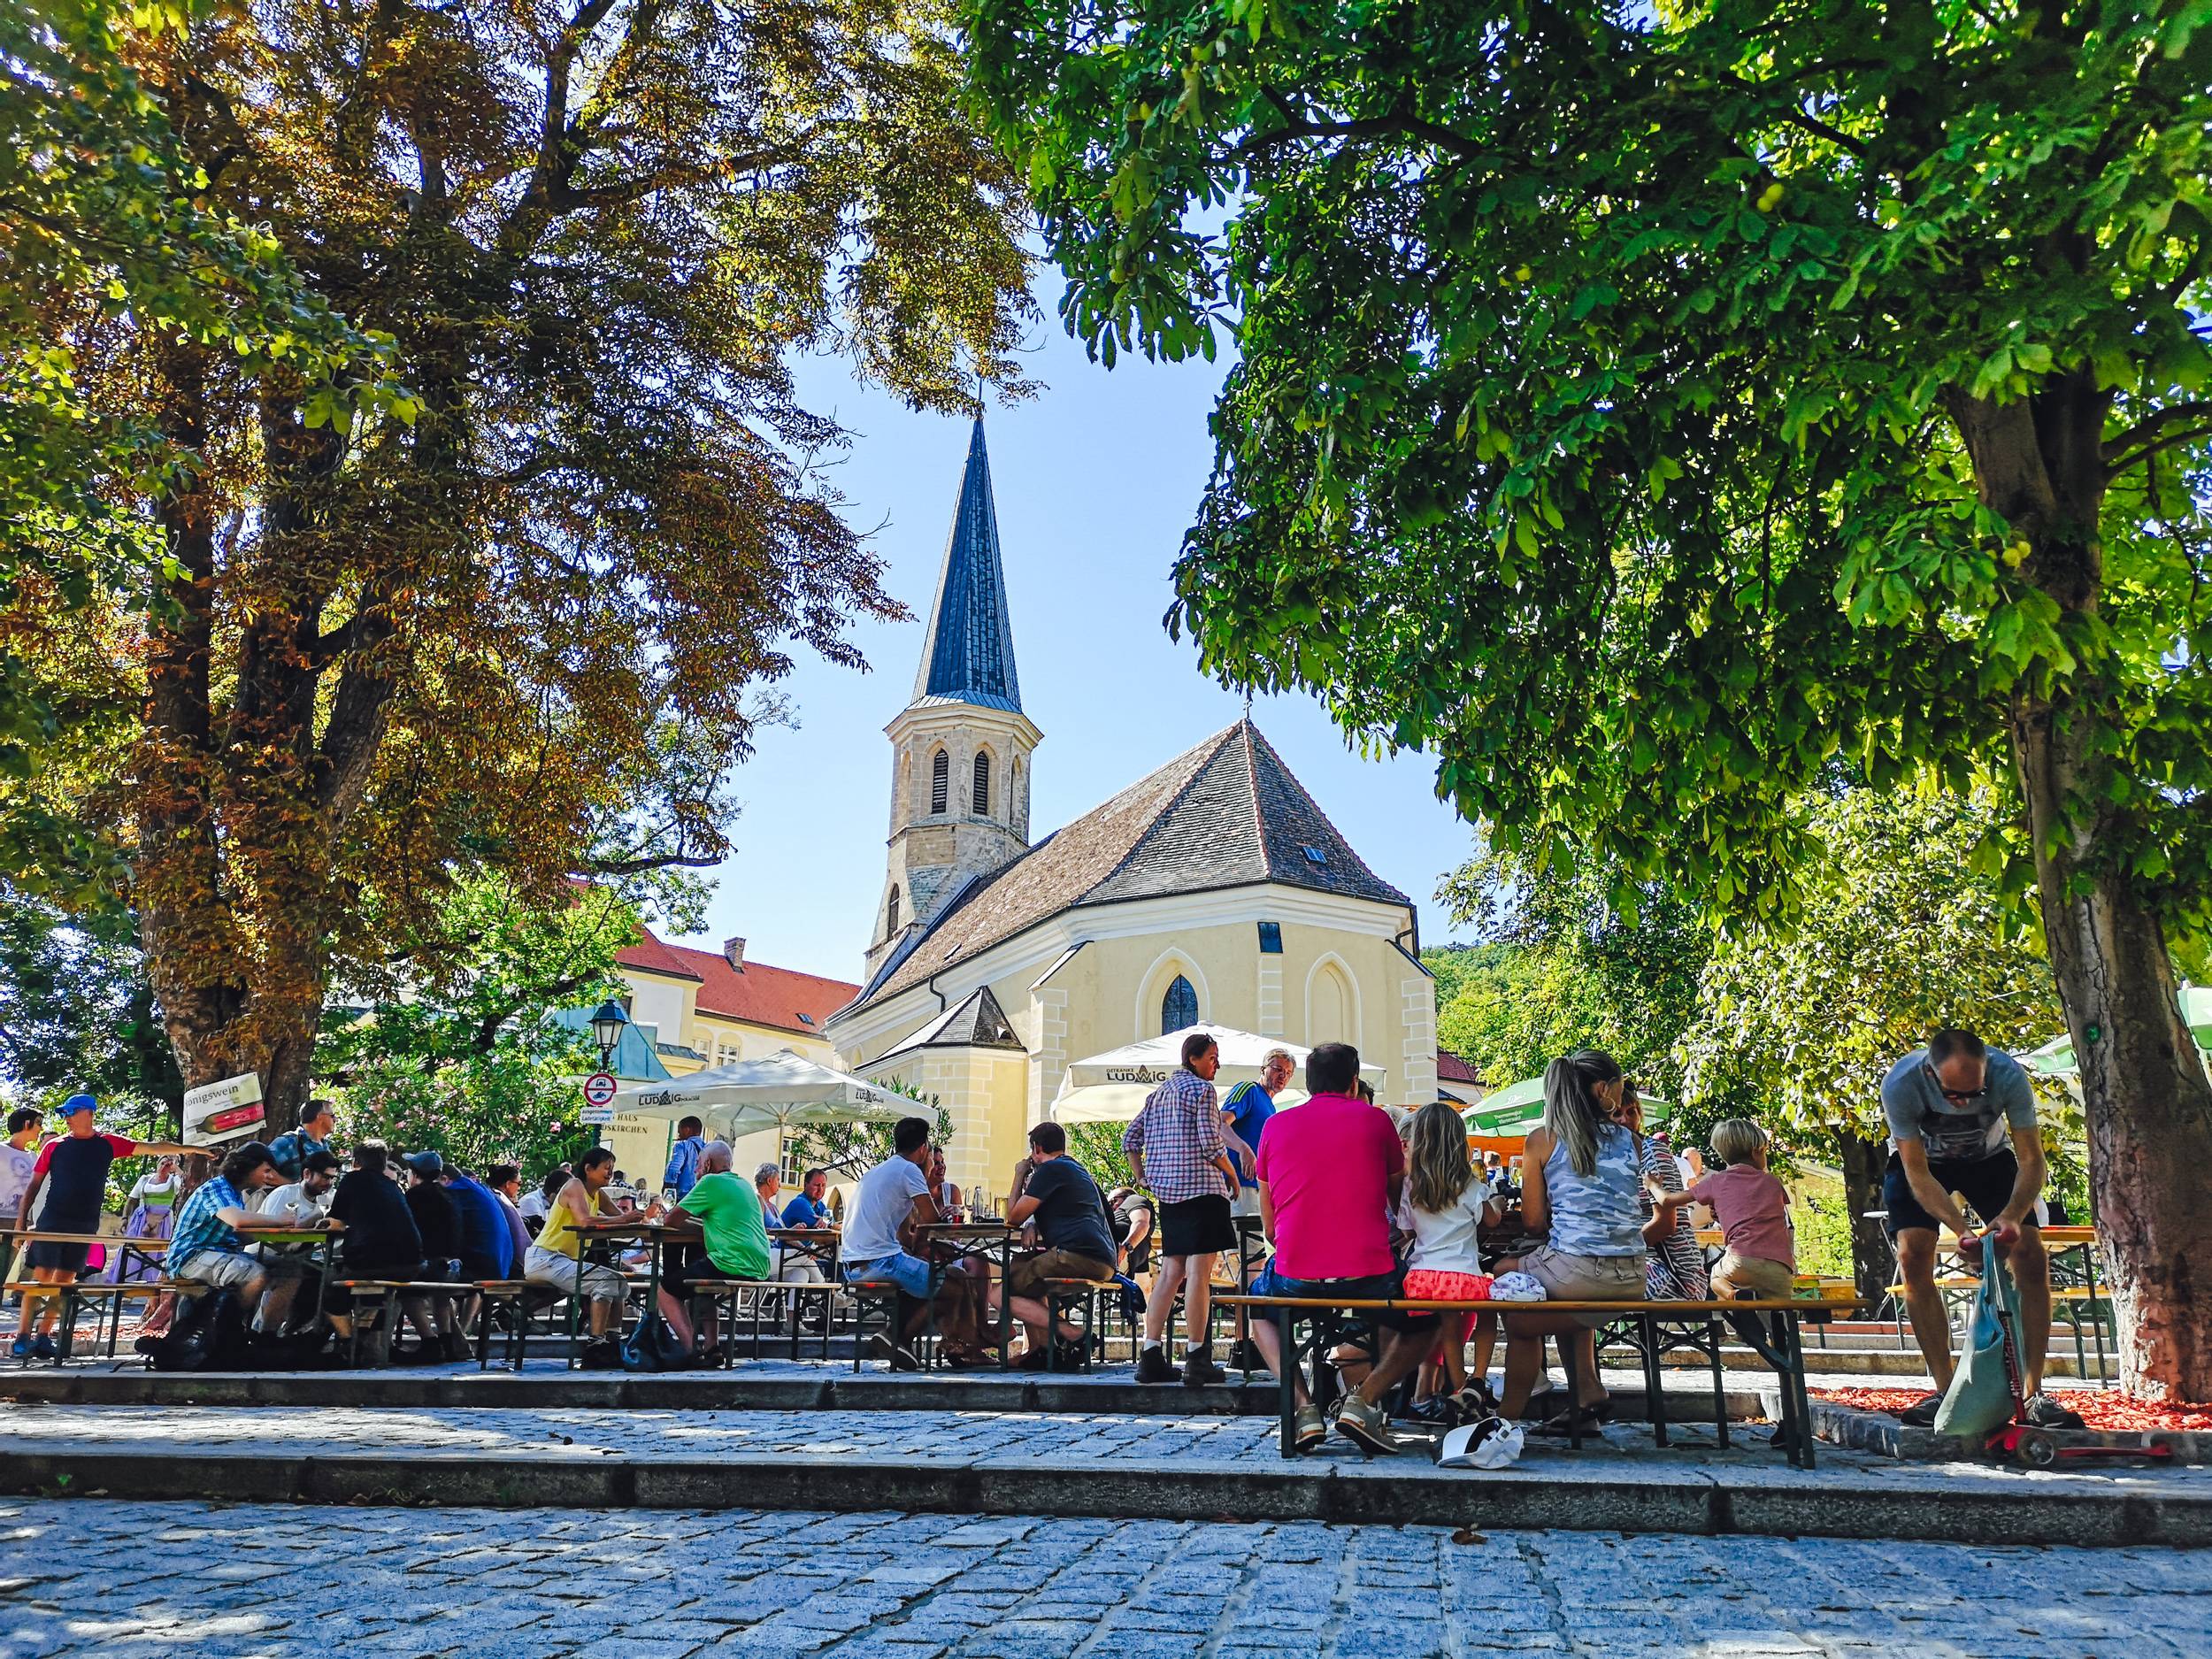 Kirchenplatz during Weinherbst in Gumpoldskirchen, Austria